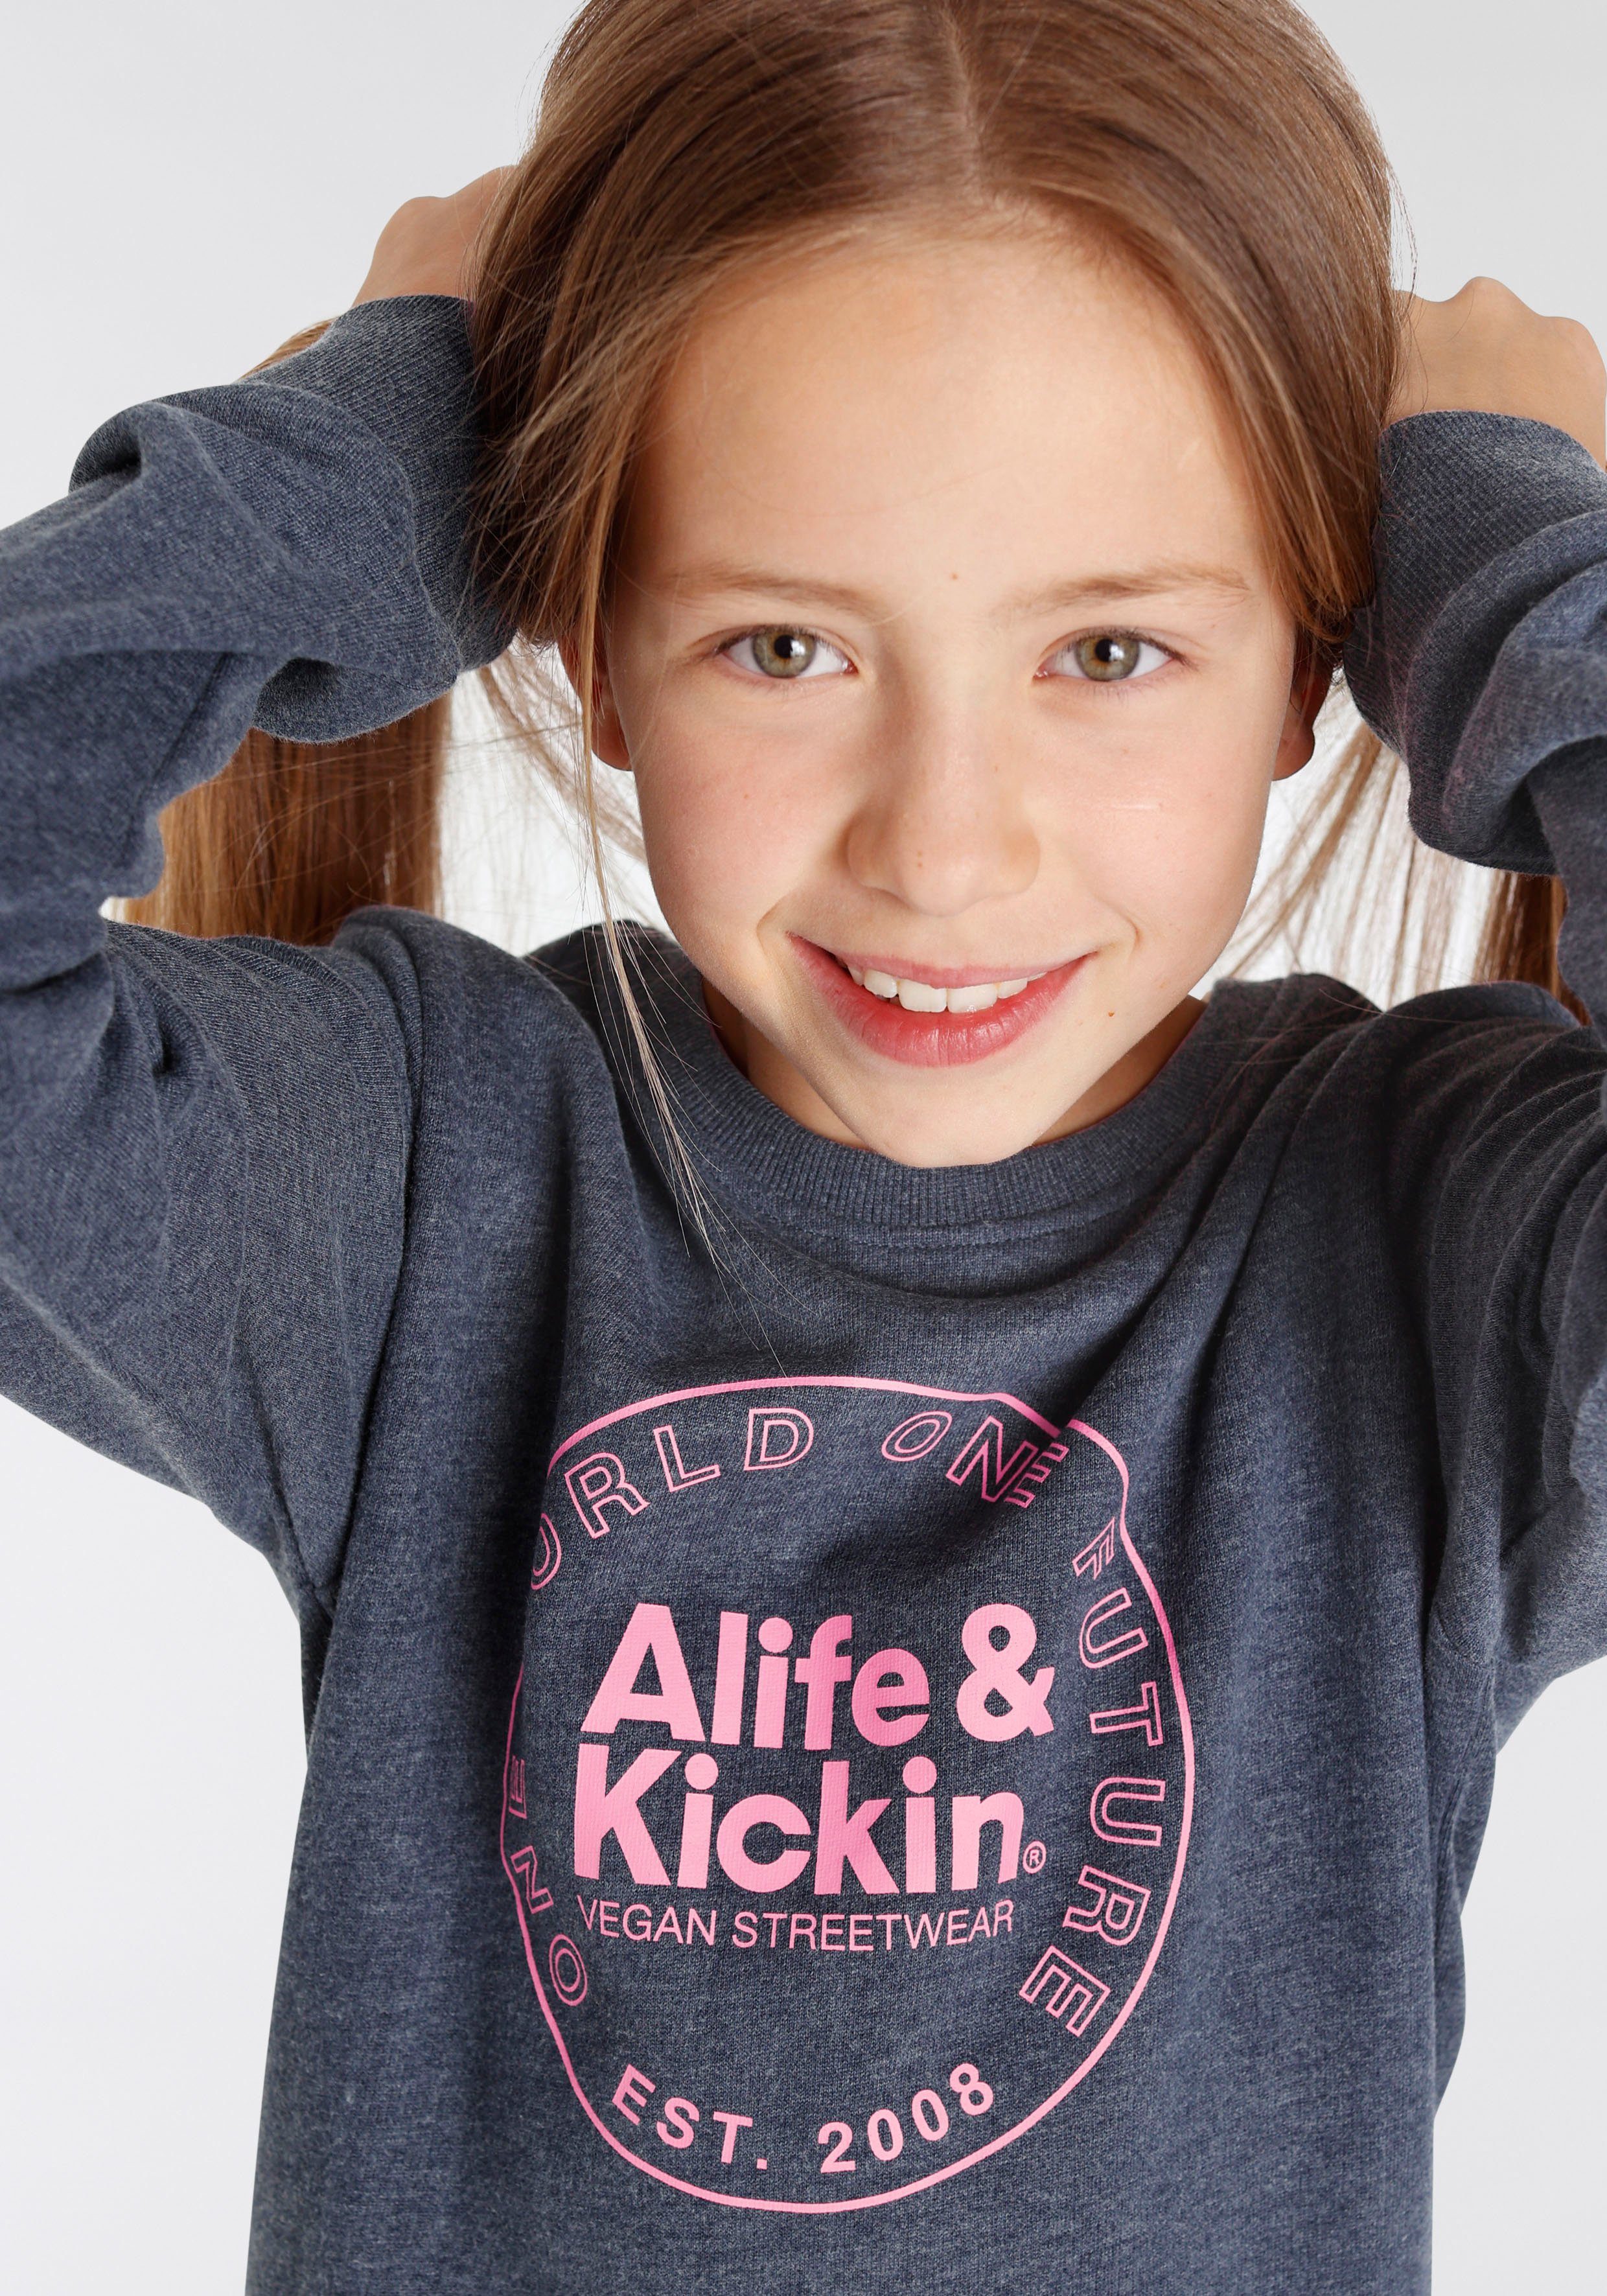 mit Kickin Alife & & NEUE Druck für Kickin Logo Sweatshirt MARKE! Kids. Alife